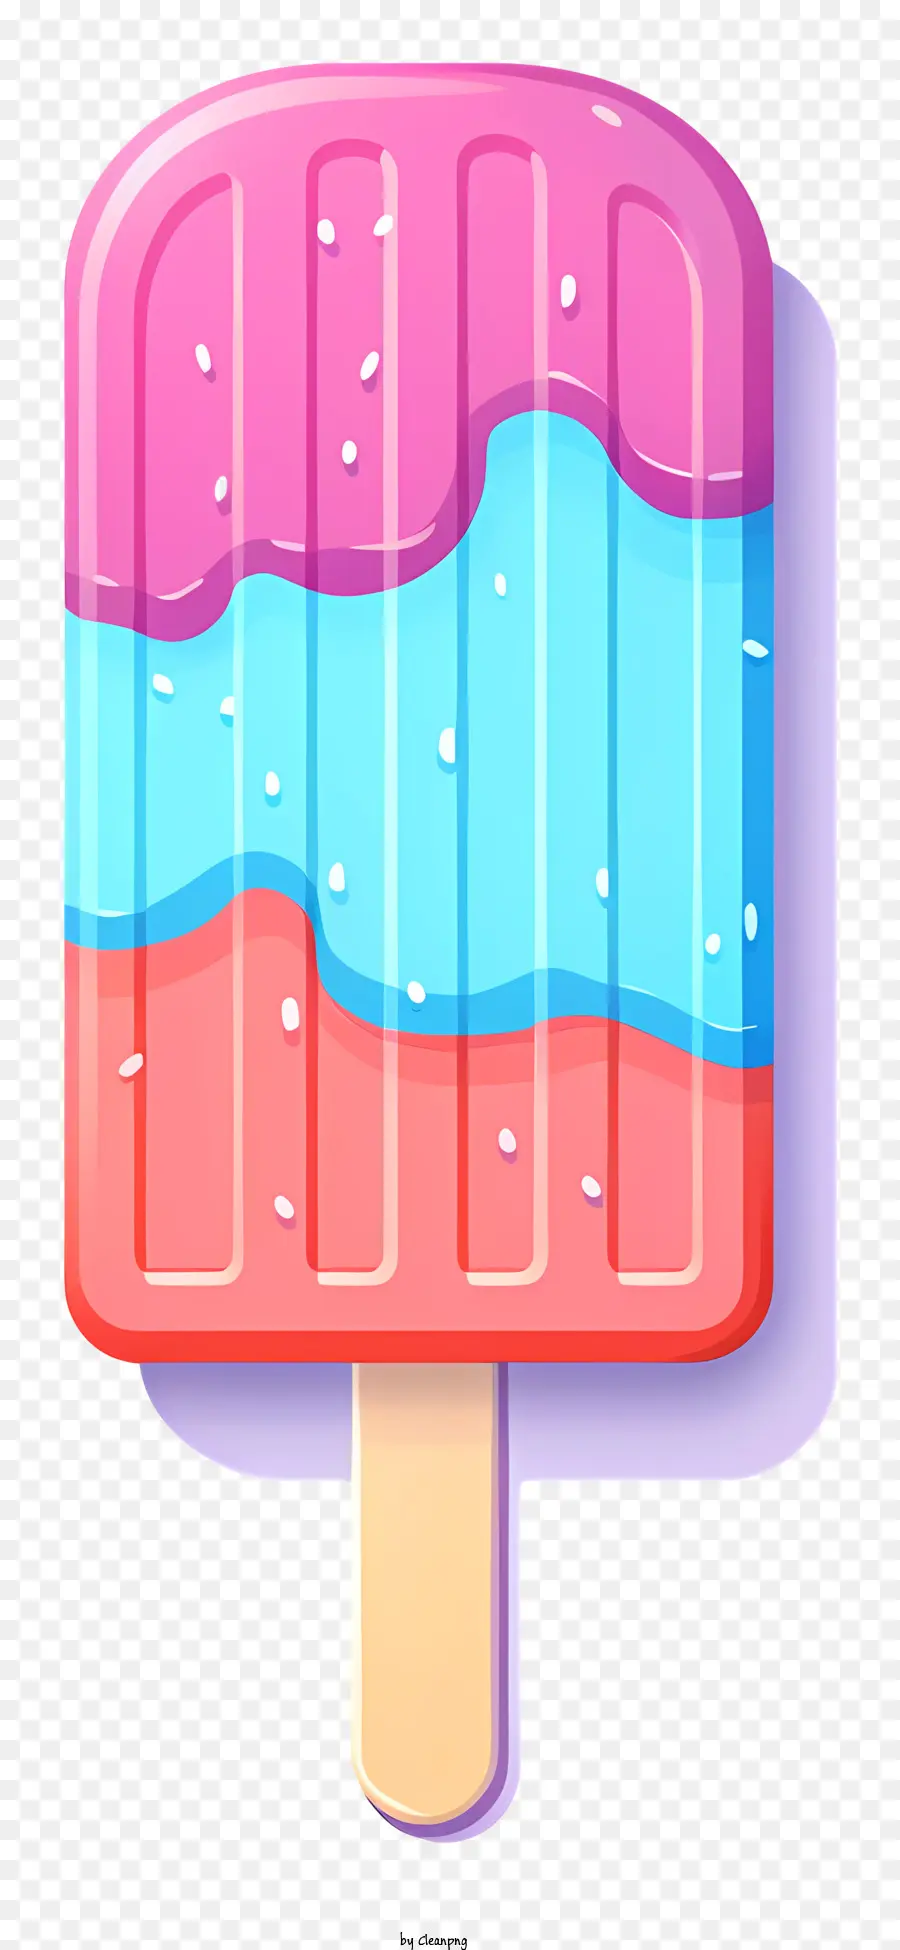 gelato - Illustrazione vettoriale di un ghiacciolo vorticoso colorato sul bastone